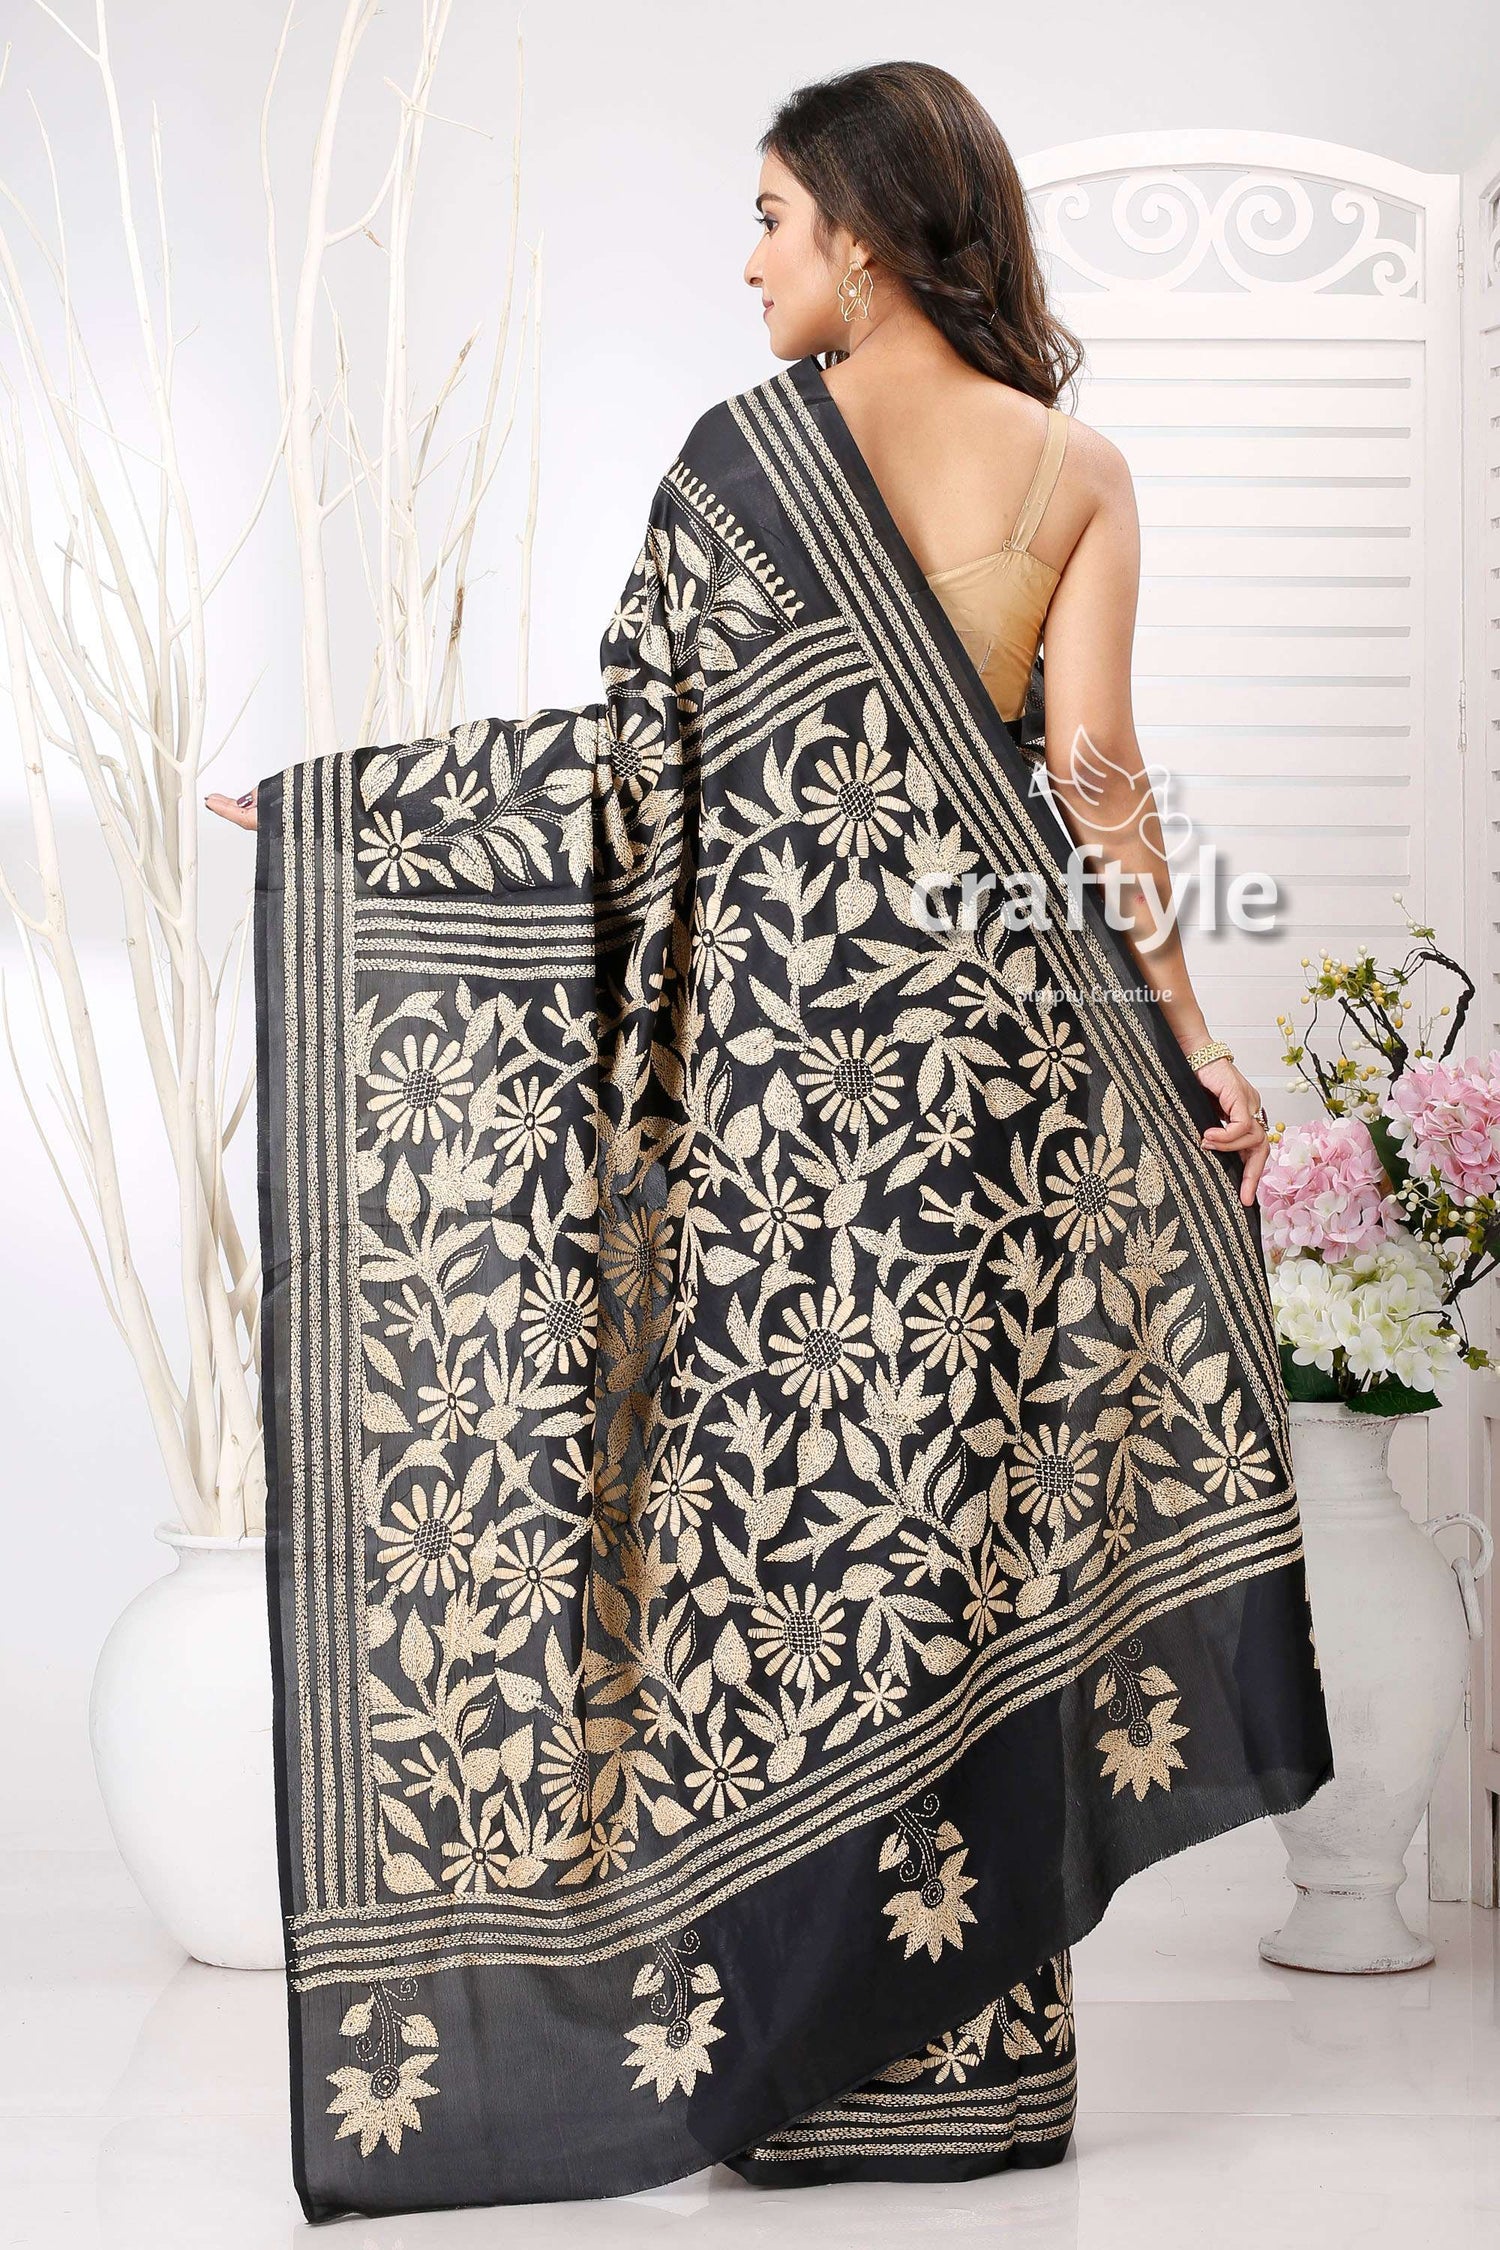 Onyx Black with Beige Thread Work Silk Kantha Saree - Craftyle